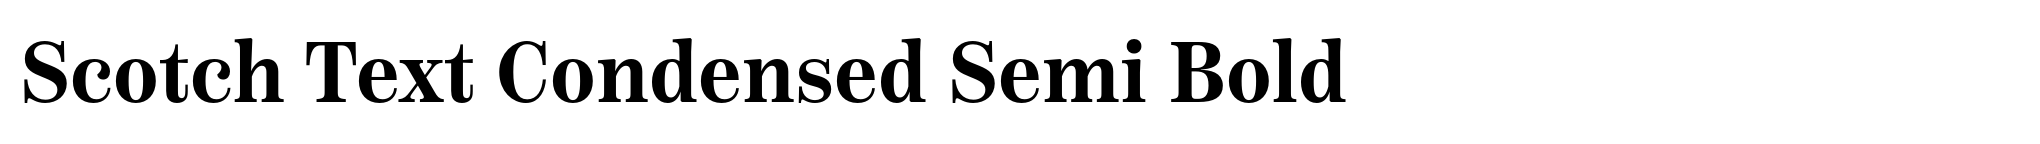 Scotch Text Condensed Semi Bold image